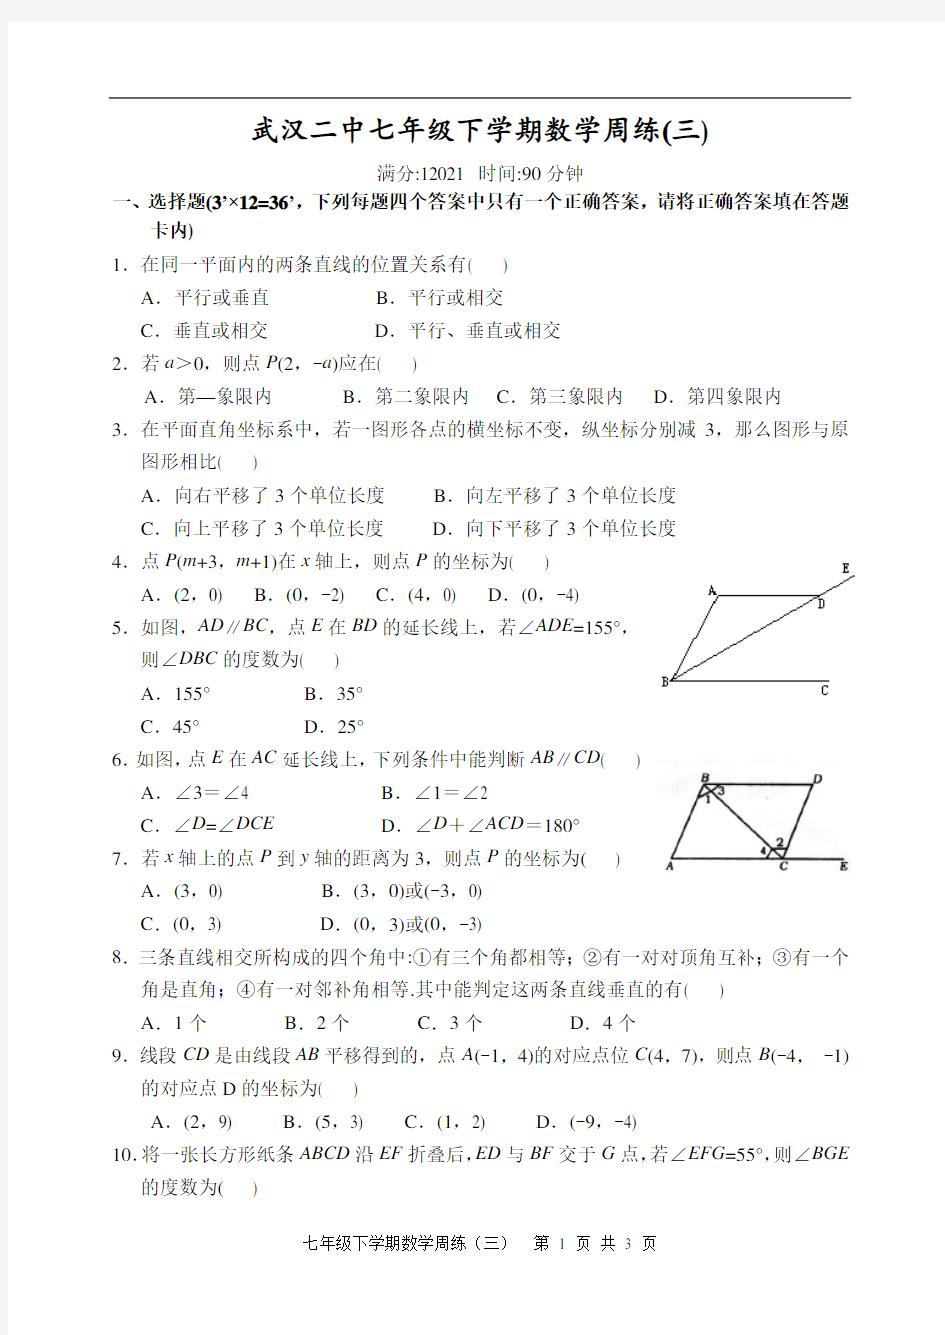 武汉二中新人教版七年级下学期数学周练试卷(三)(样卷)